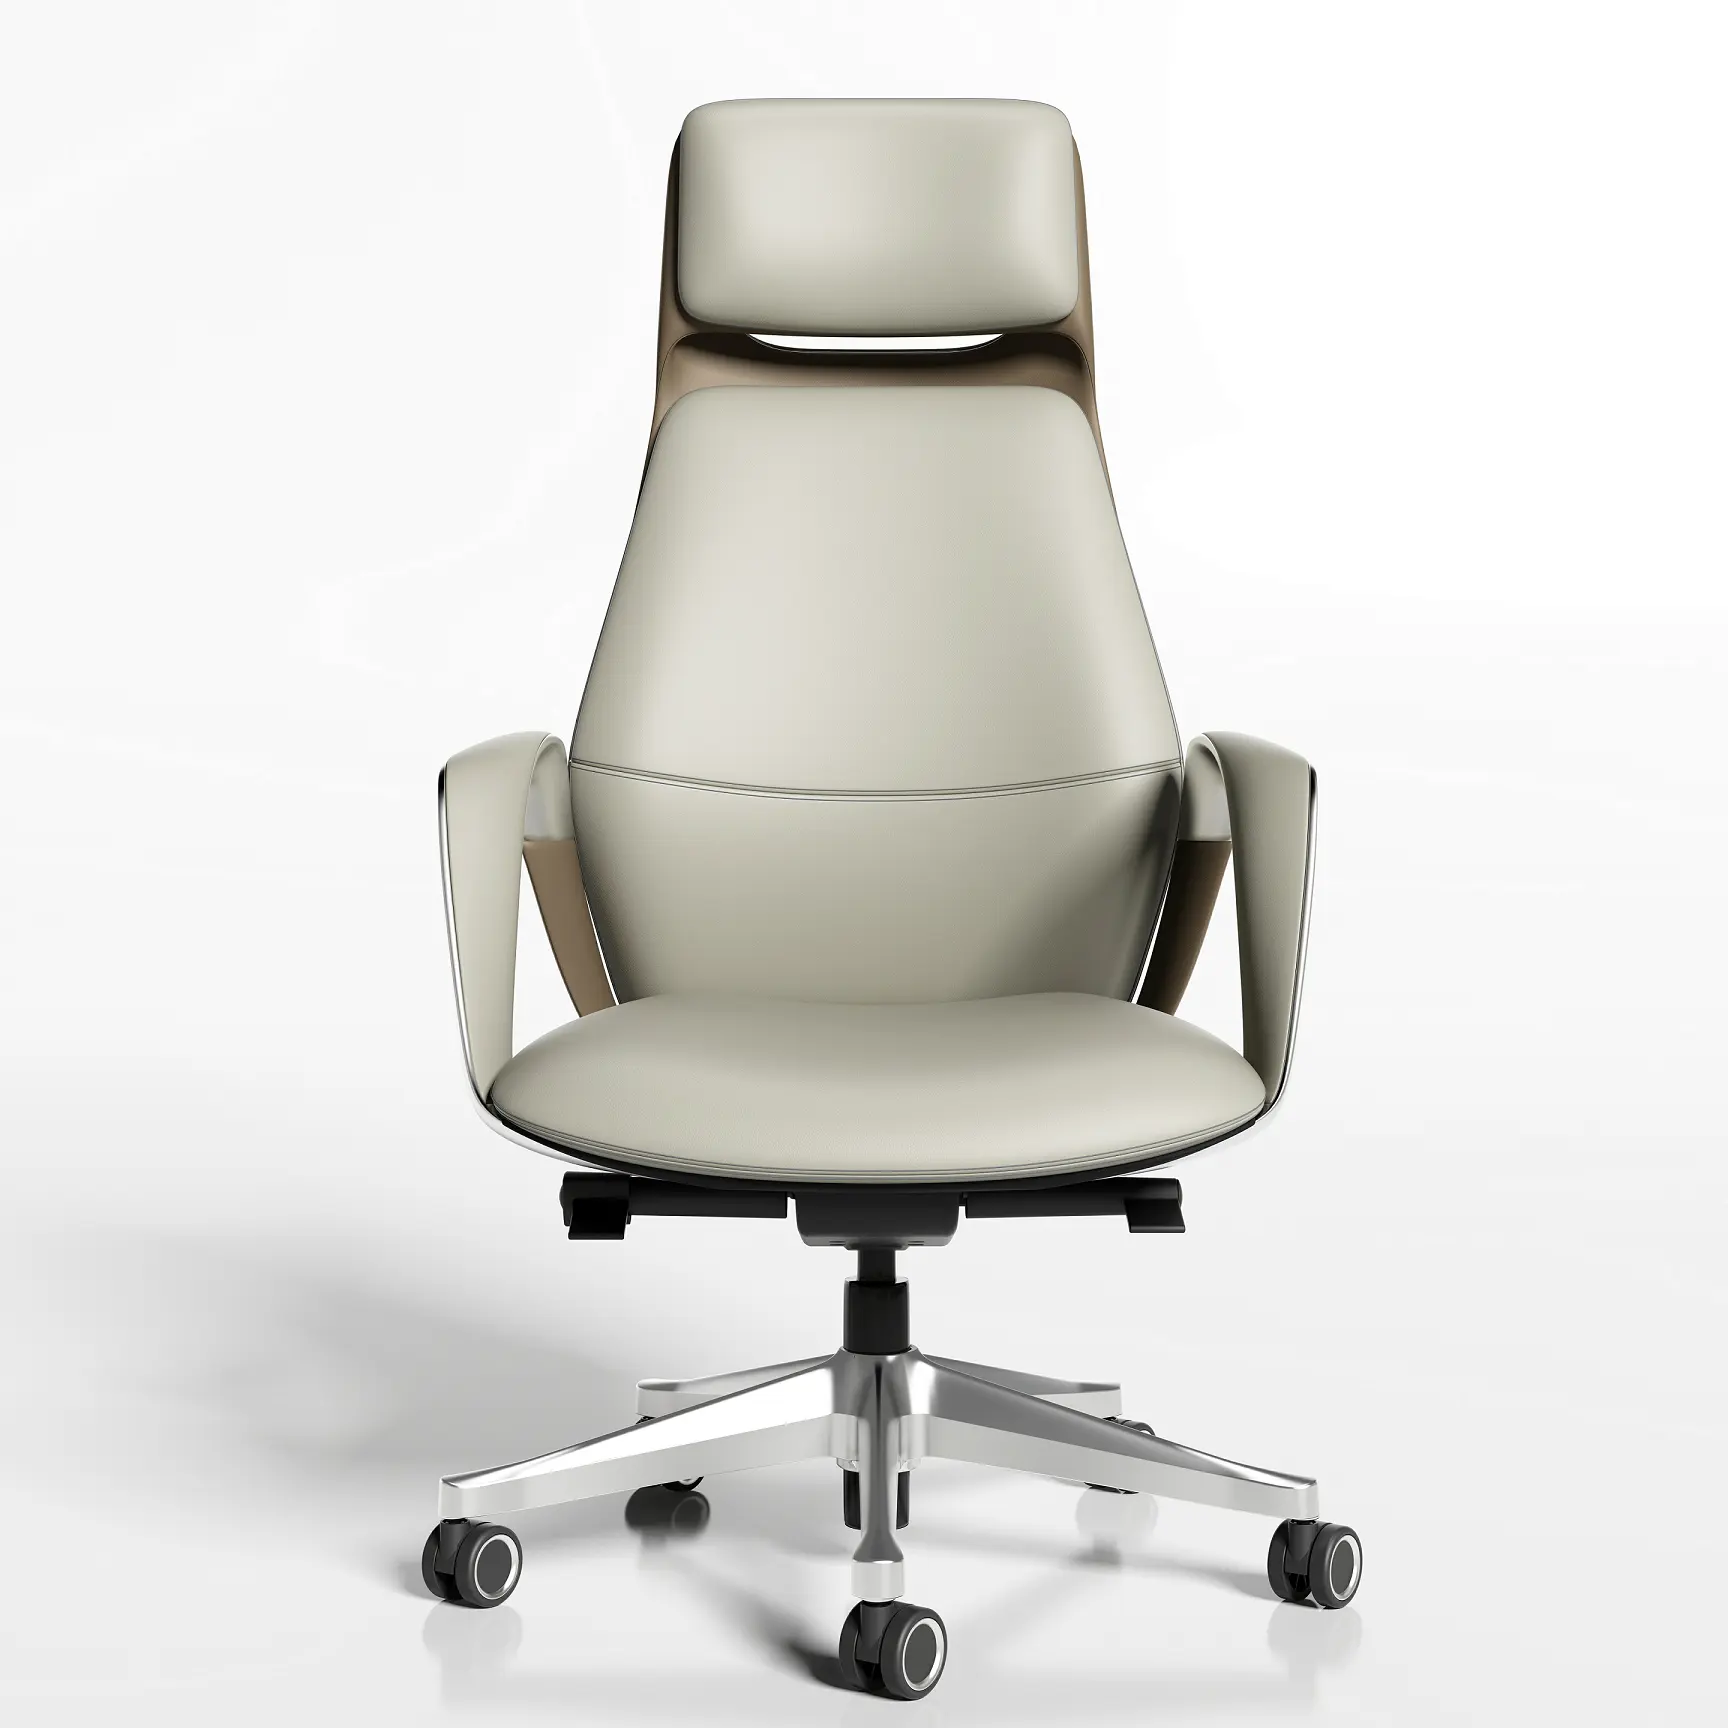 Фабричное производство, различные конференц-кресла высокого класса из натуральной кожи